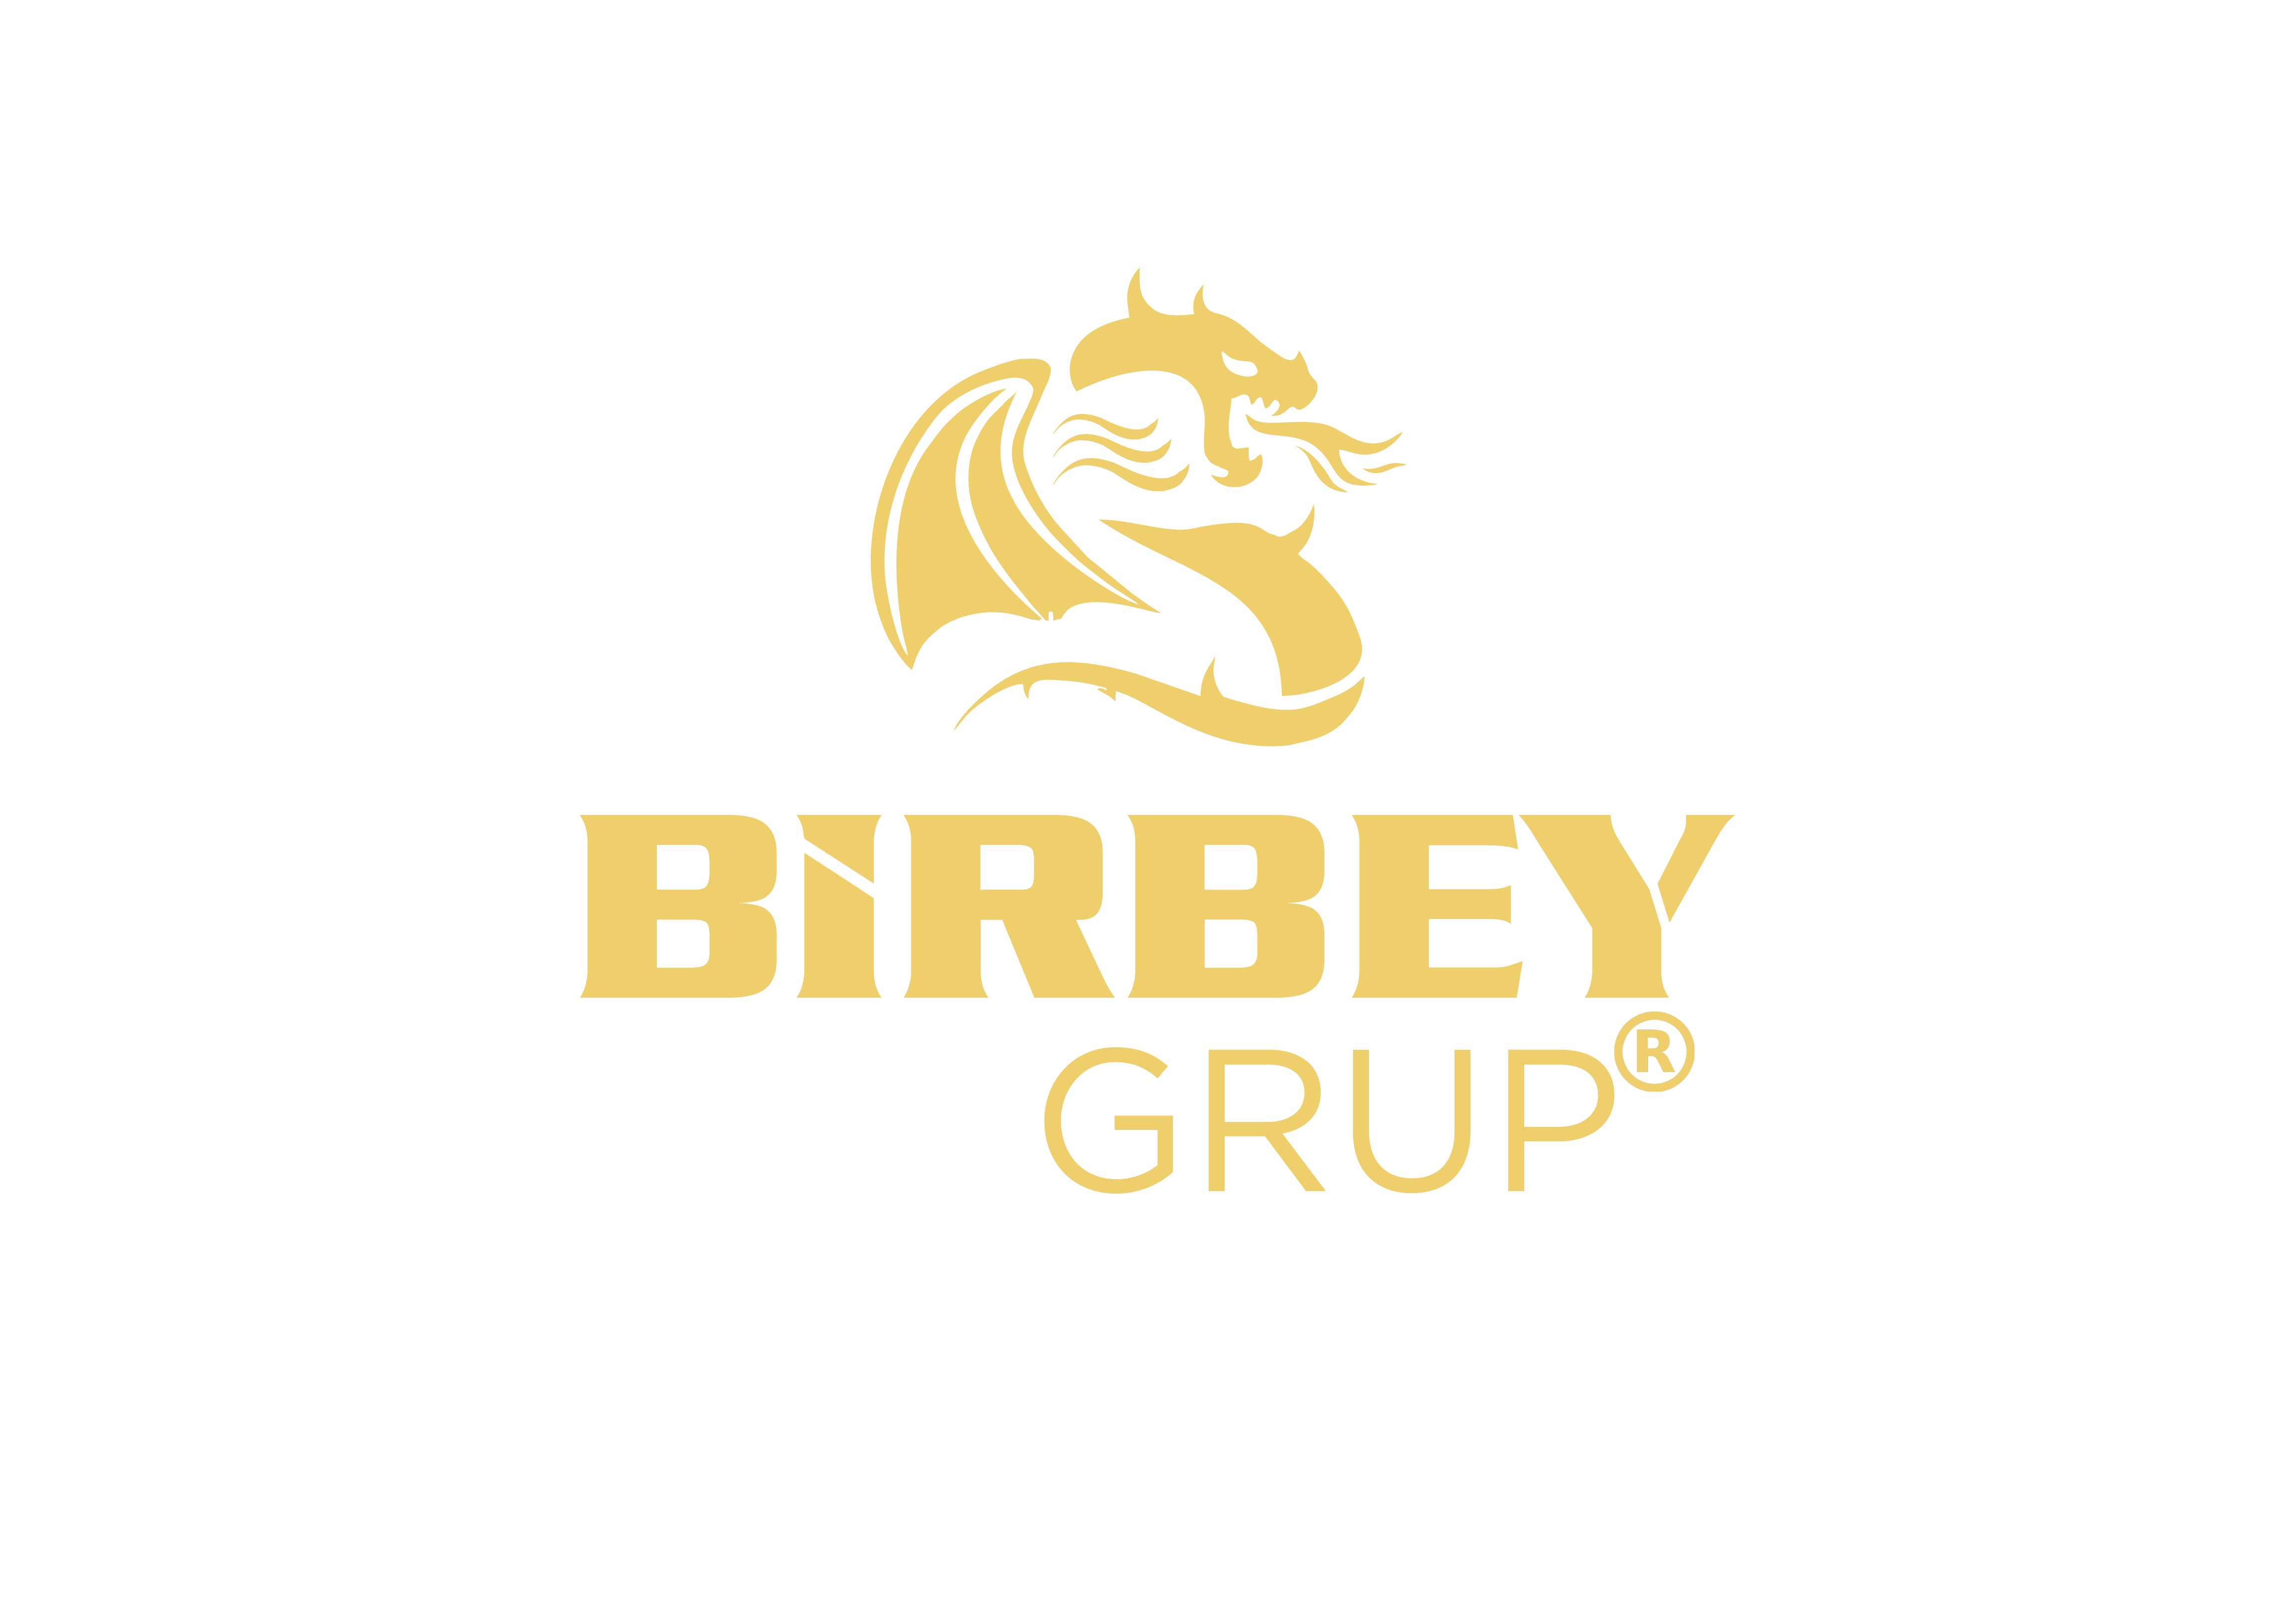 Birbey Grup